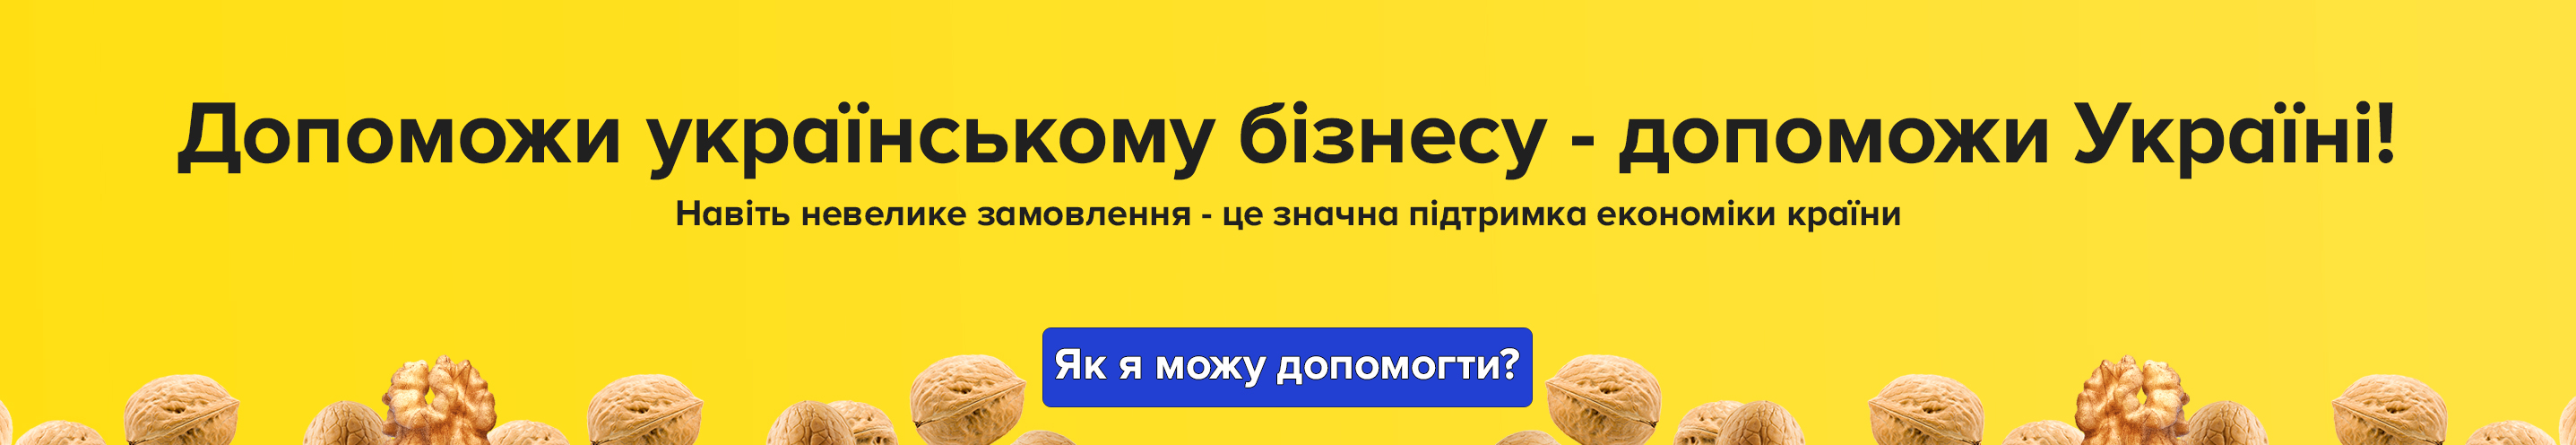 Допоможи українському бізнесу - допоможи Україні!